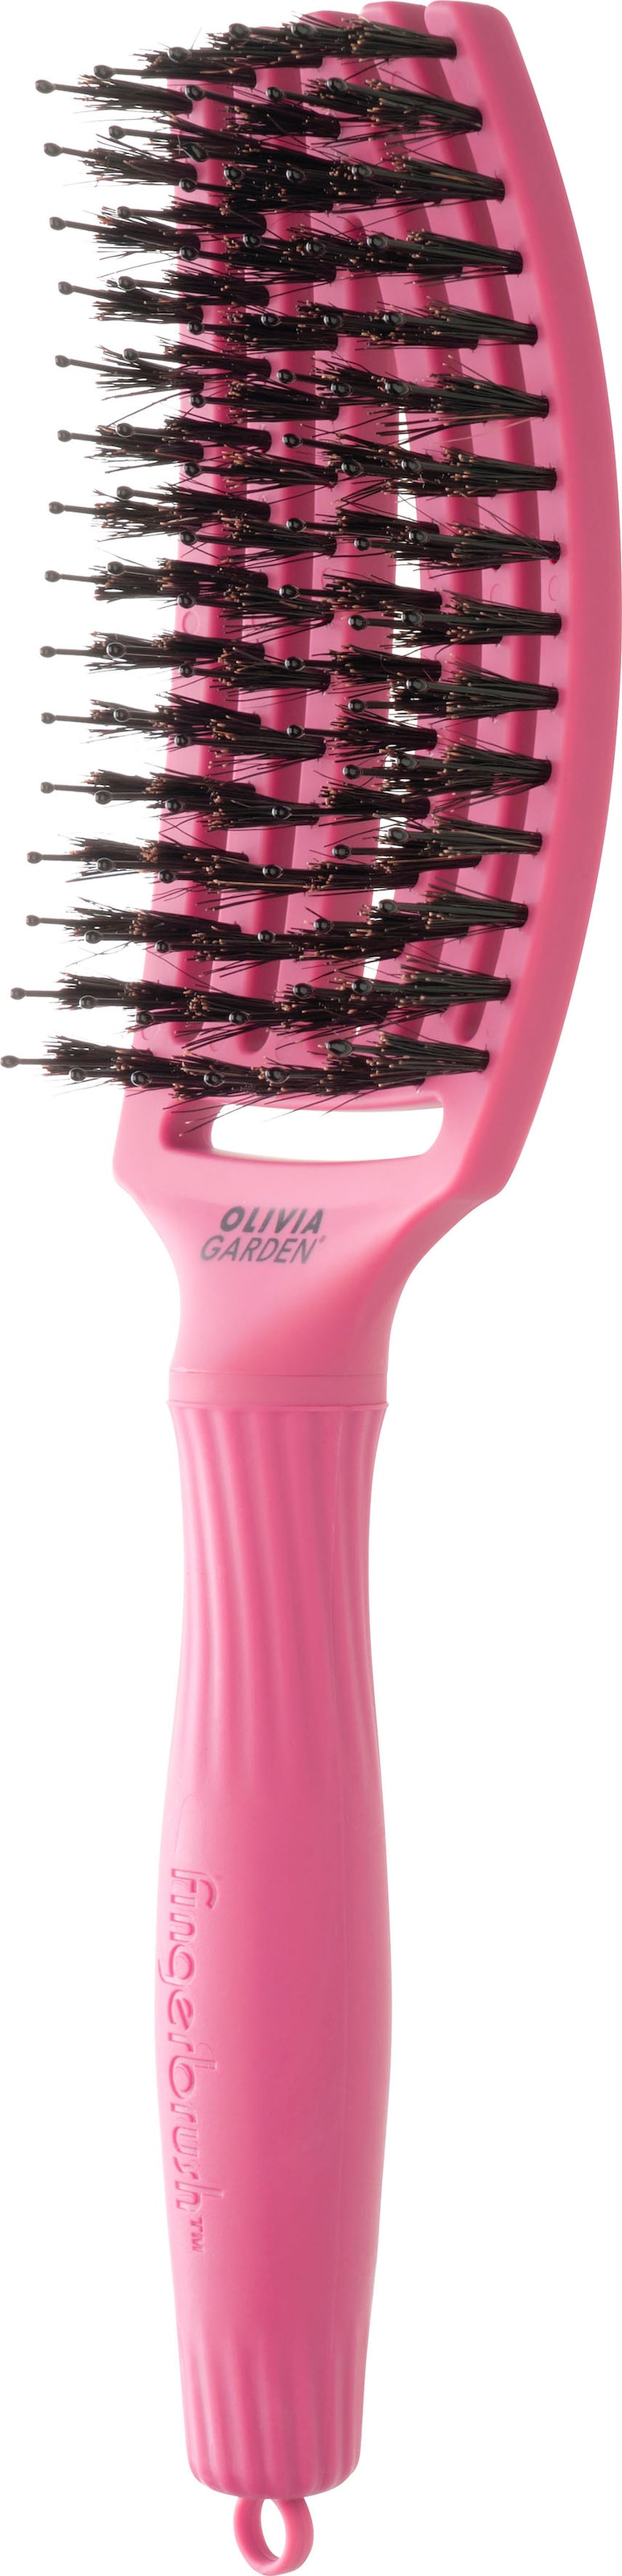 GARDEN Medium« Haarbürste Combo OLIVIA online OTTO bestellen »Fingerbrush bei